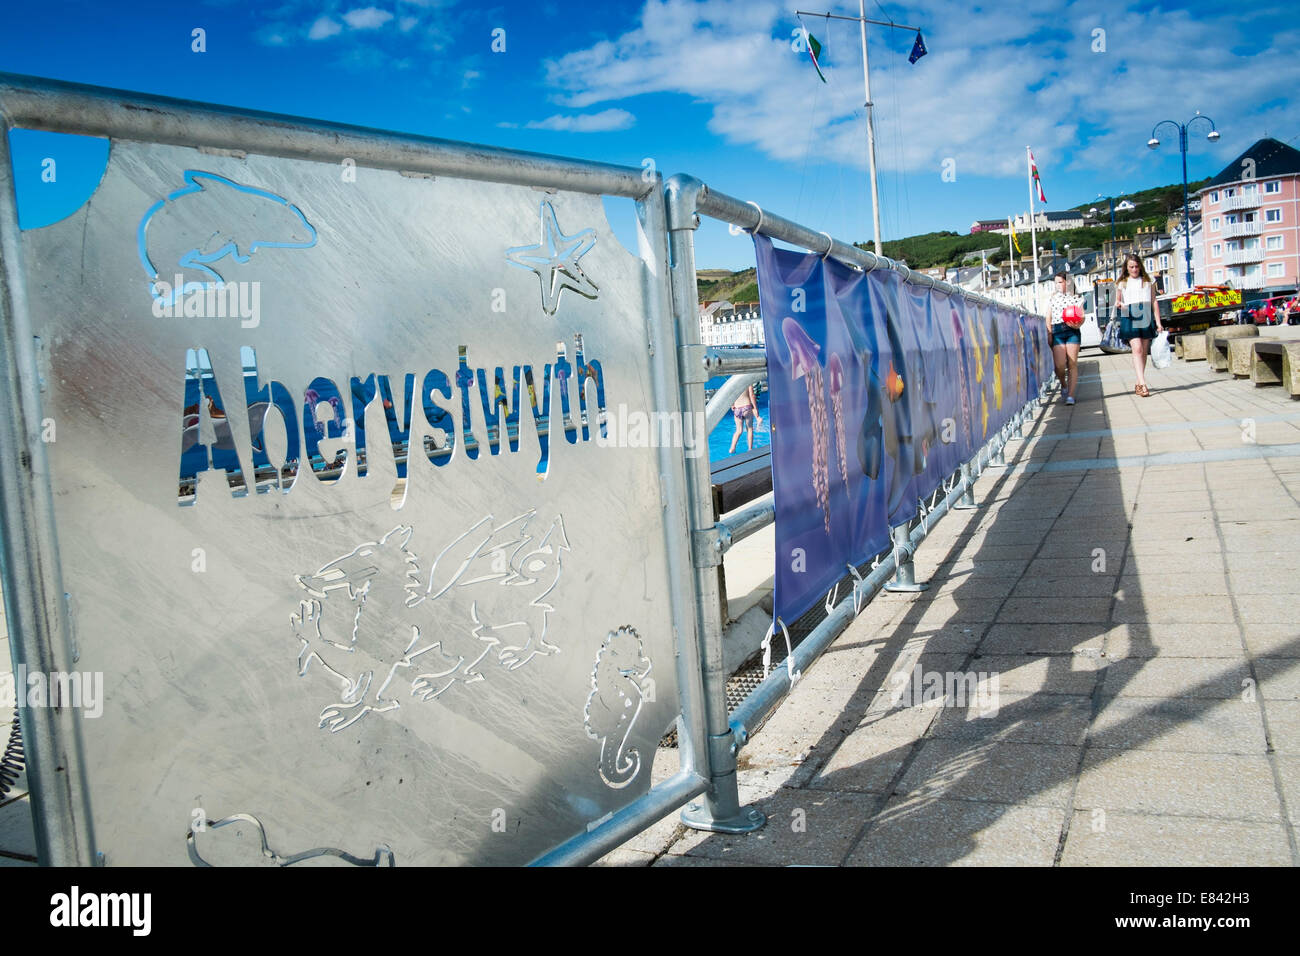 Le nom de la ville d'Aberystwyth pochoir découpé en lettrage sur une barrière métallique à la pataugeoire pour enfants au pays de Galles, Royaume-Uni Banque D'Images